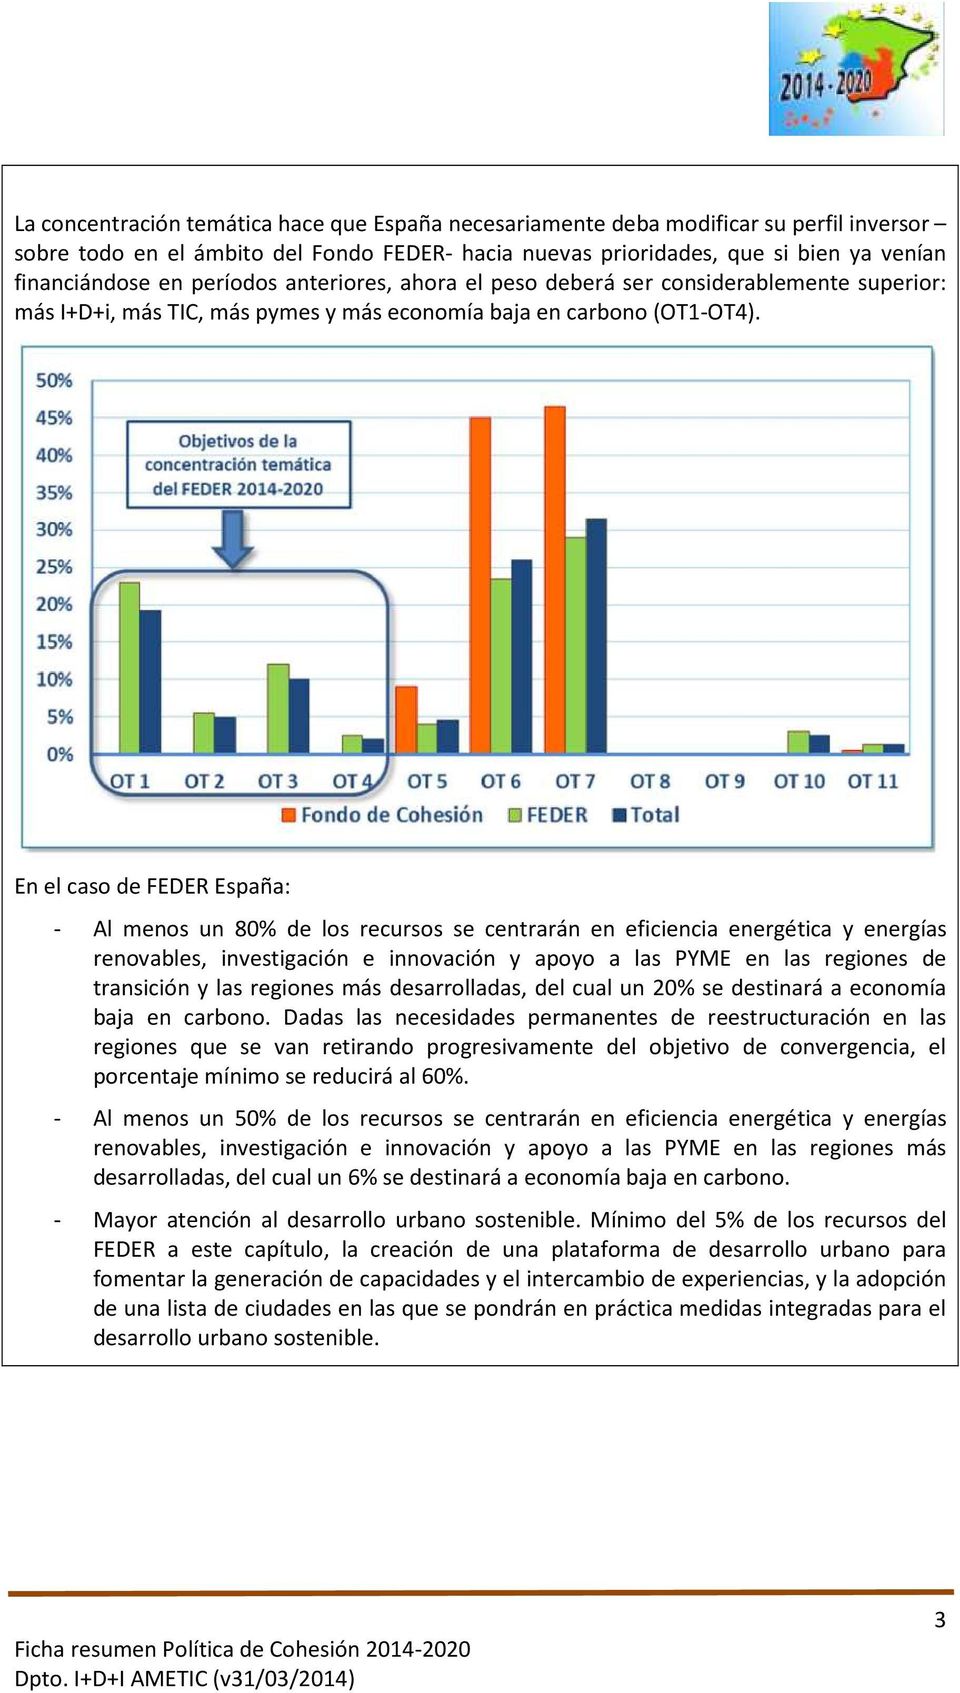 En el caso de FEDER España: - Al menos un 80% de los recursos se centrarán en eficiencia energética y energías renovables, investigación e innovación y apoyo a las PYME en las regiones de transición